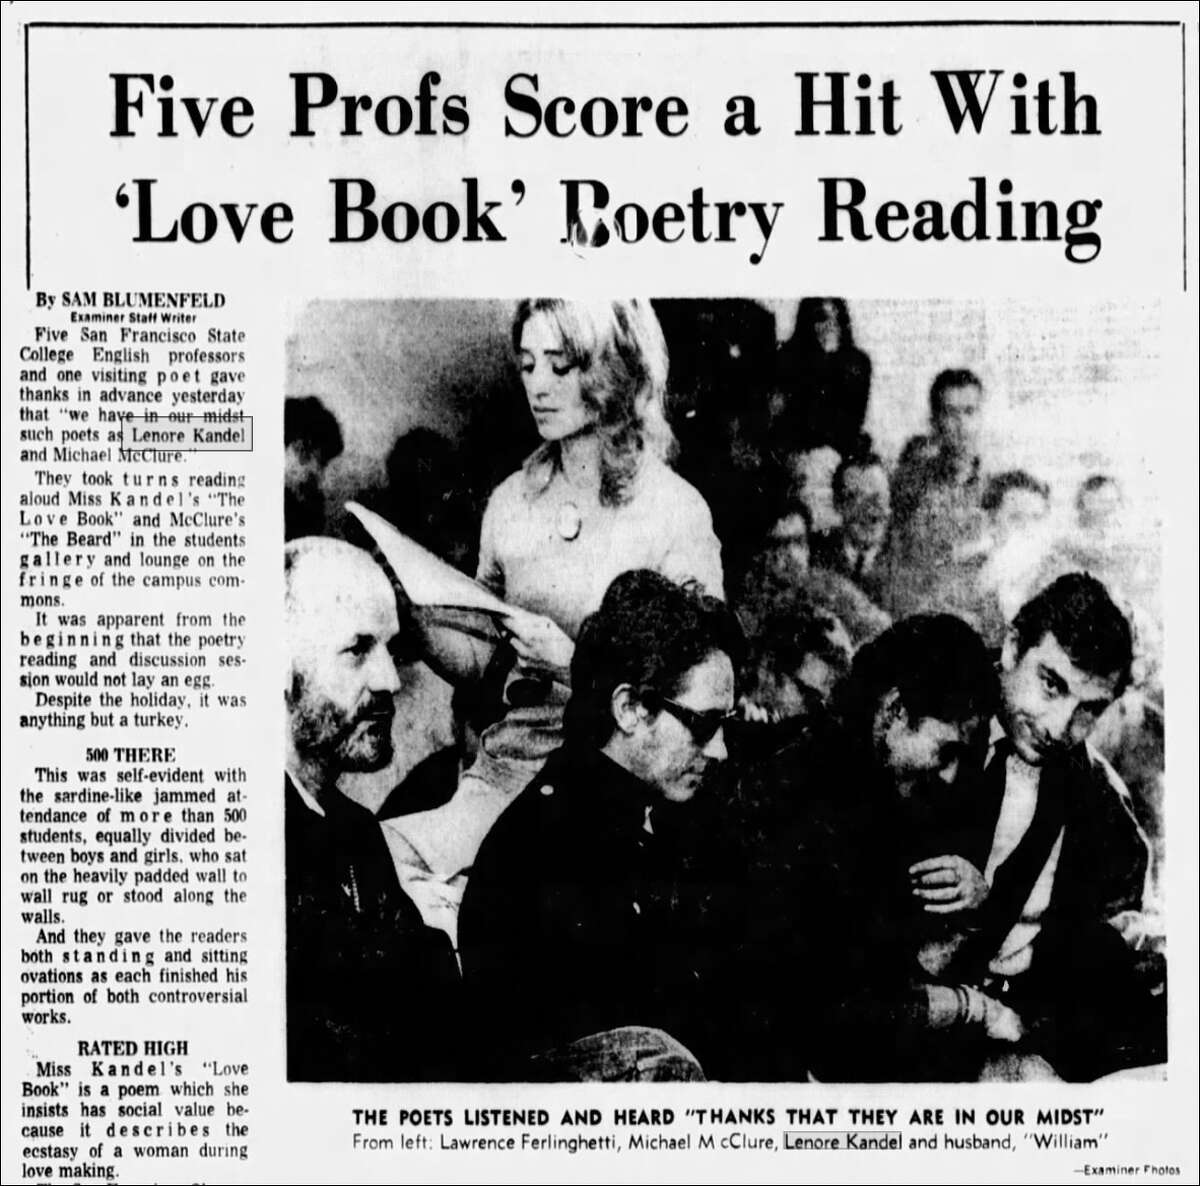 Un artículo del 24 de noviembre de 1966, que cubre una lectura local del libro de Lenore Kandel "El libro del amor" con la asistencia de notables poetas, incluidos Michael McClure y Lawrence Ferlinghetti.